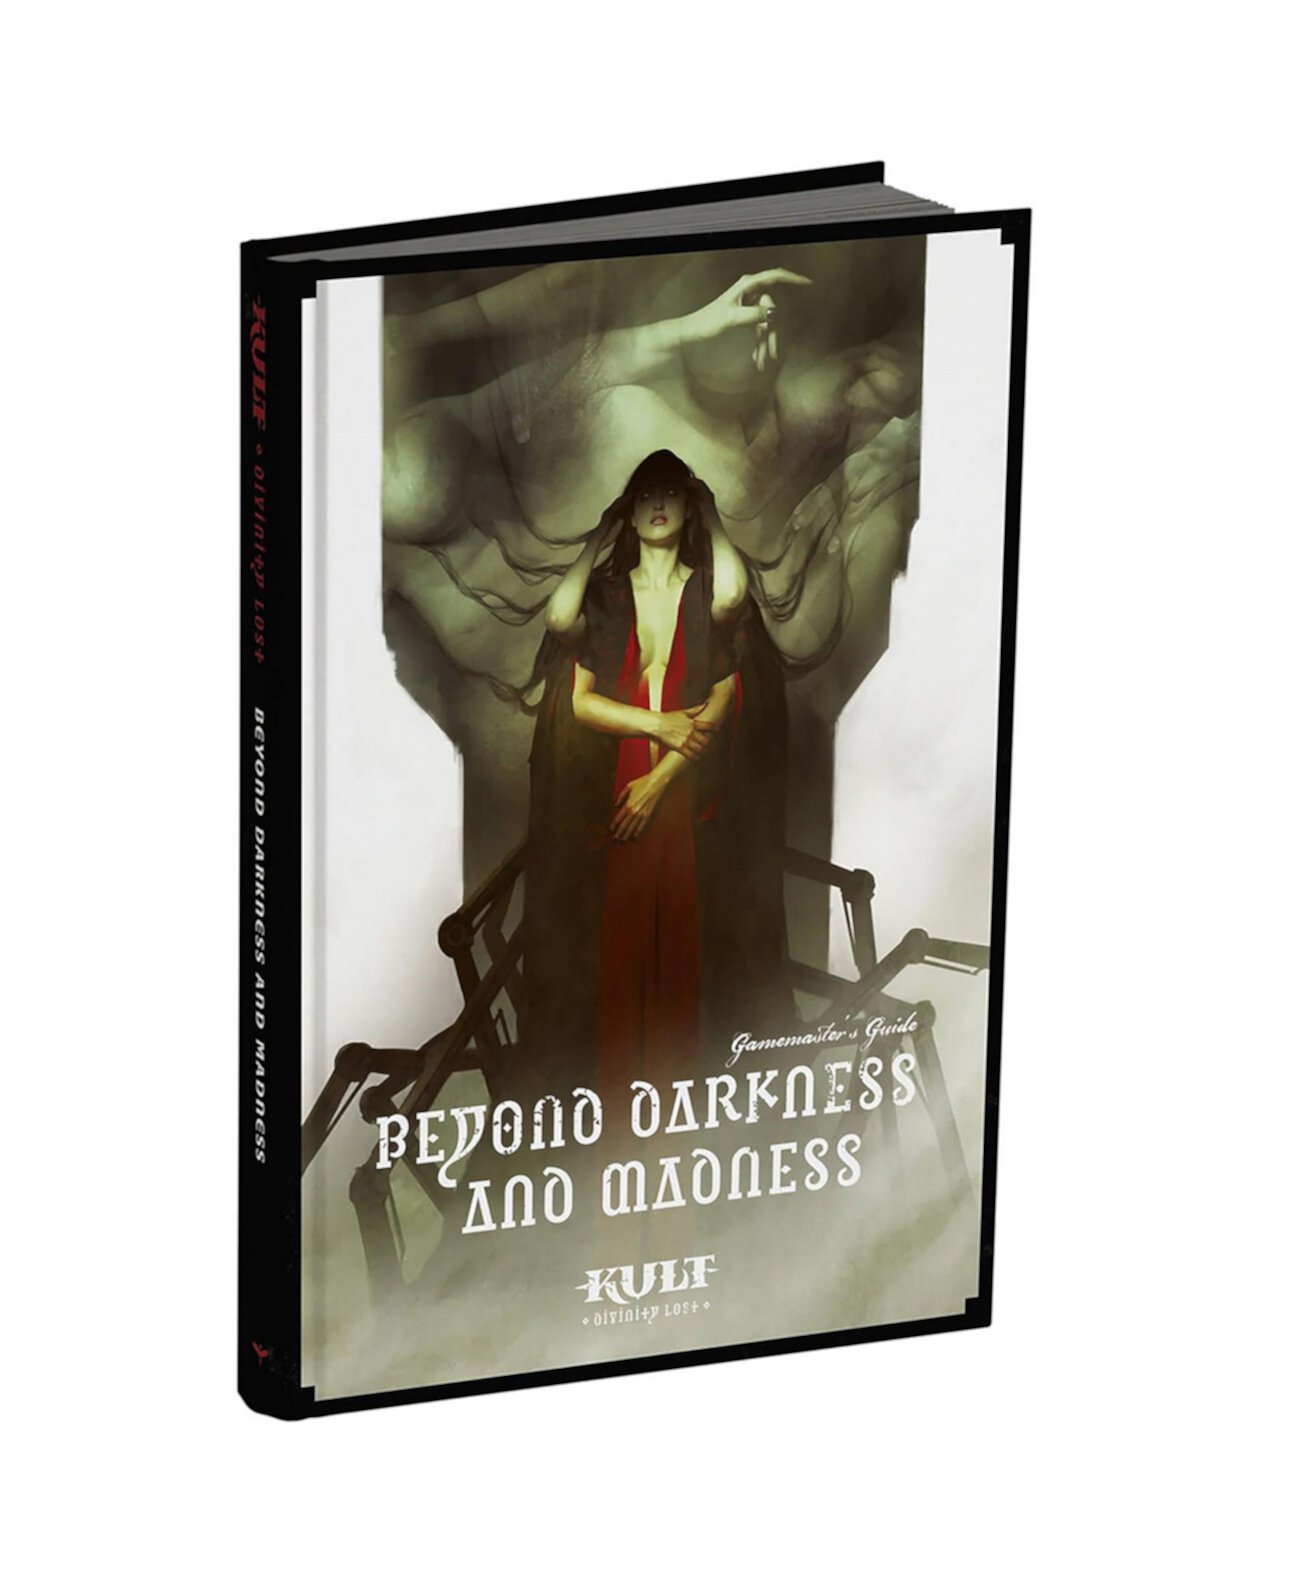 KULT Beyond Darkness and Madness, стандартное издание, 296 страниц, твердый переплет, справочник для гейммастера, ролевая игра Impressions